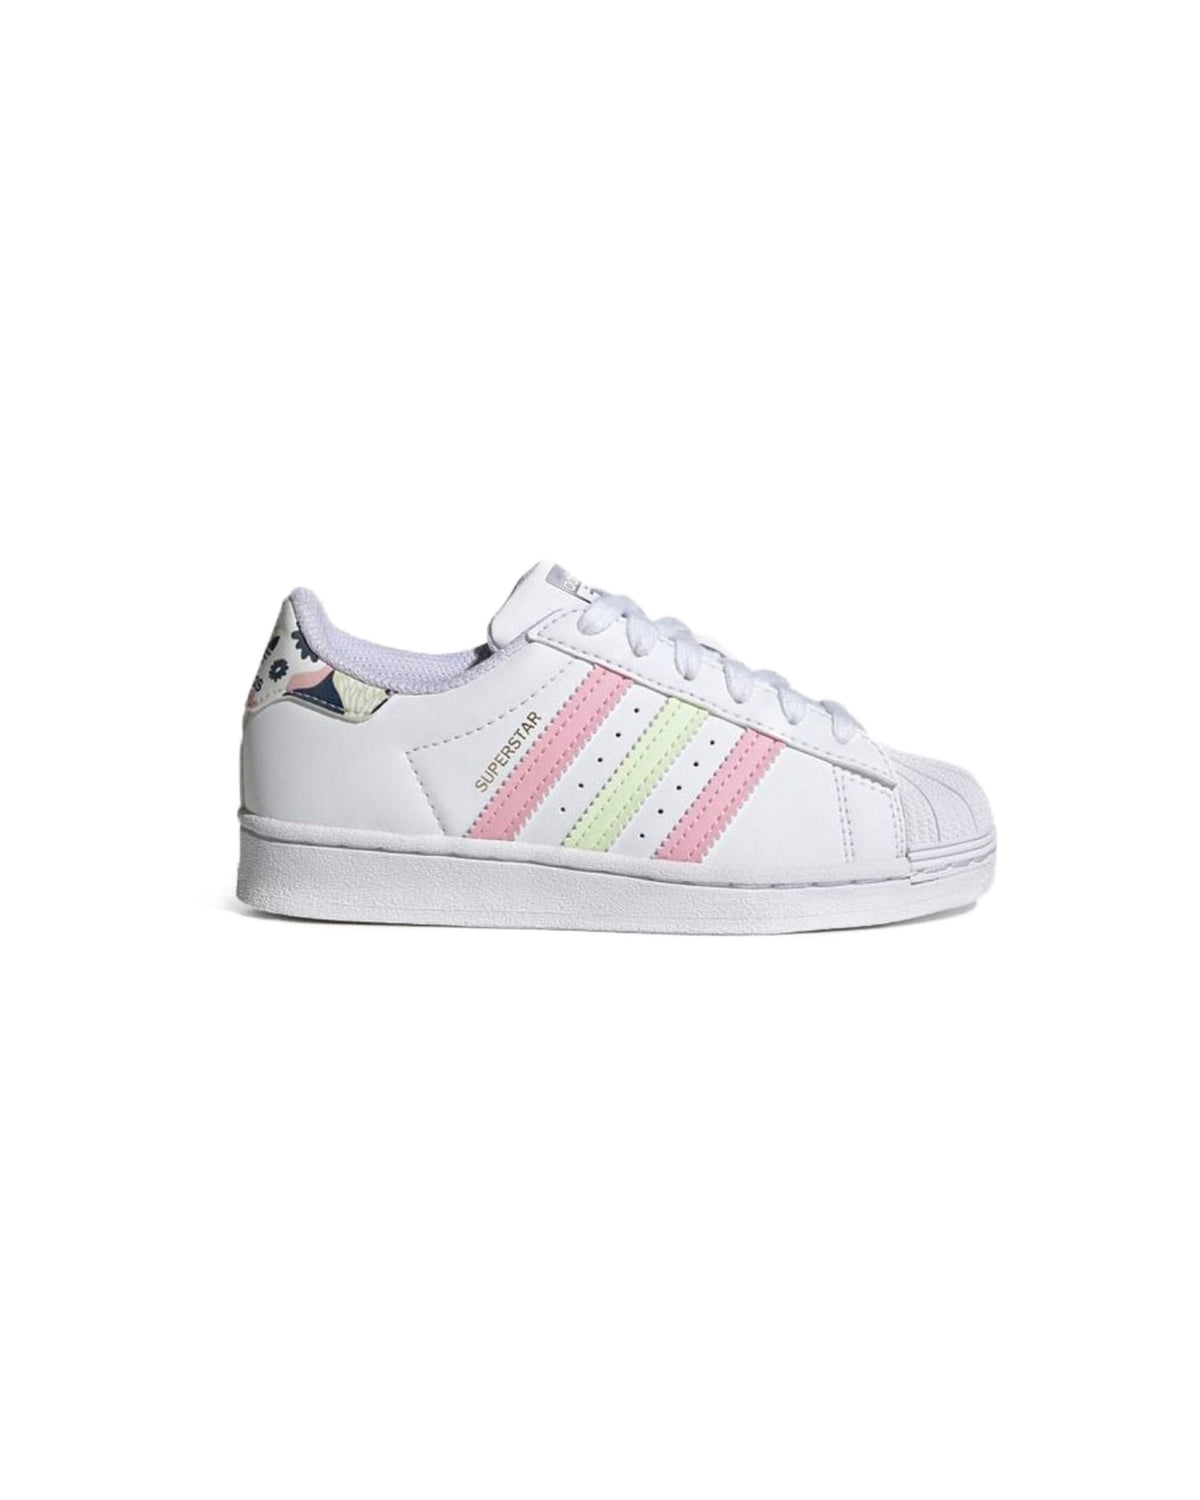 Adidas Superstar C White Pink